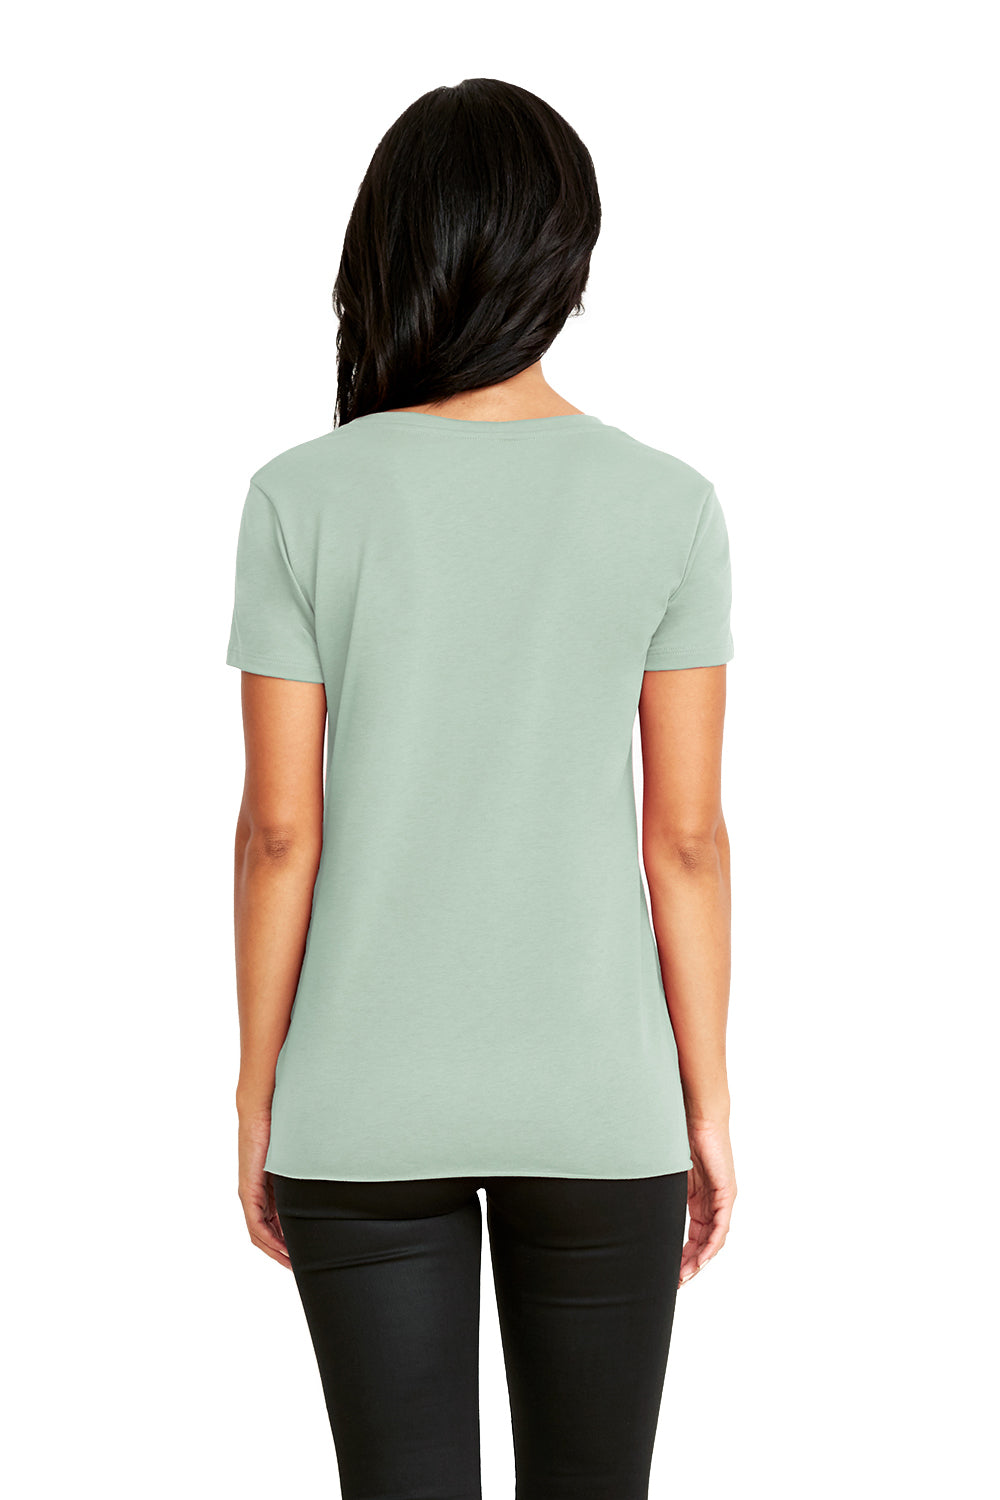 Next Level 5030 Womens Festival Short Sleeve Crewneck T-Shirt Stonewashed Green Back